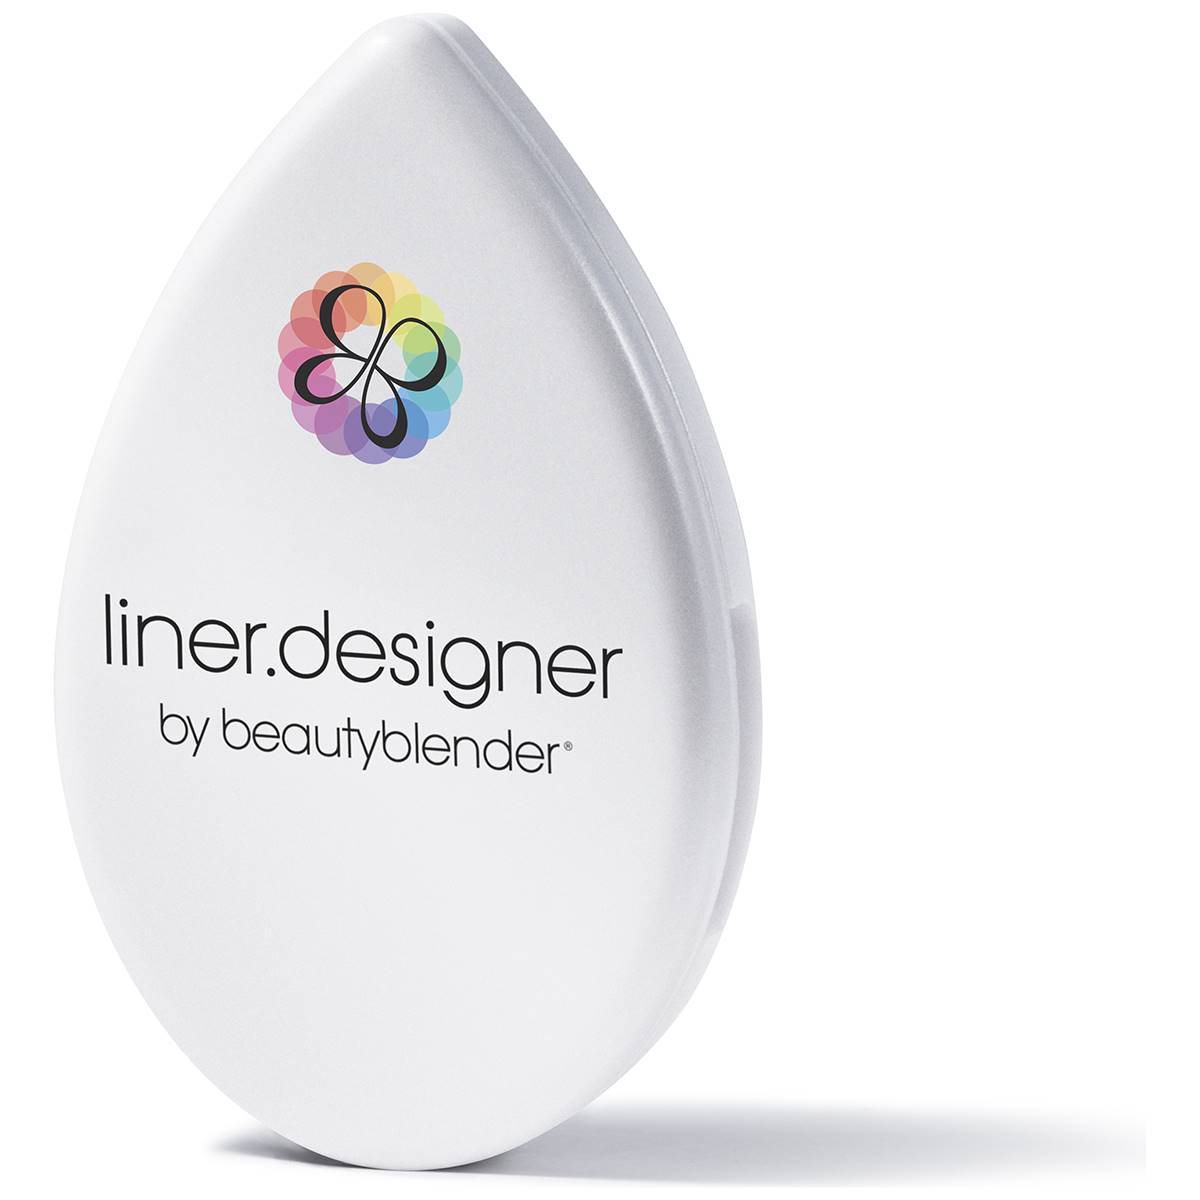 Beautyblender(R) Liner Designer Pro